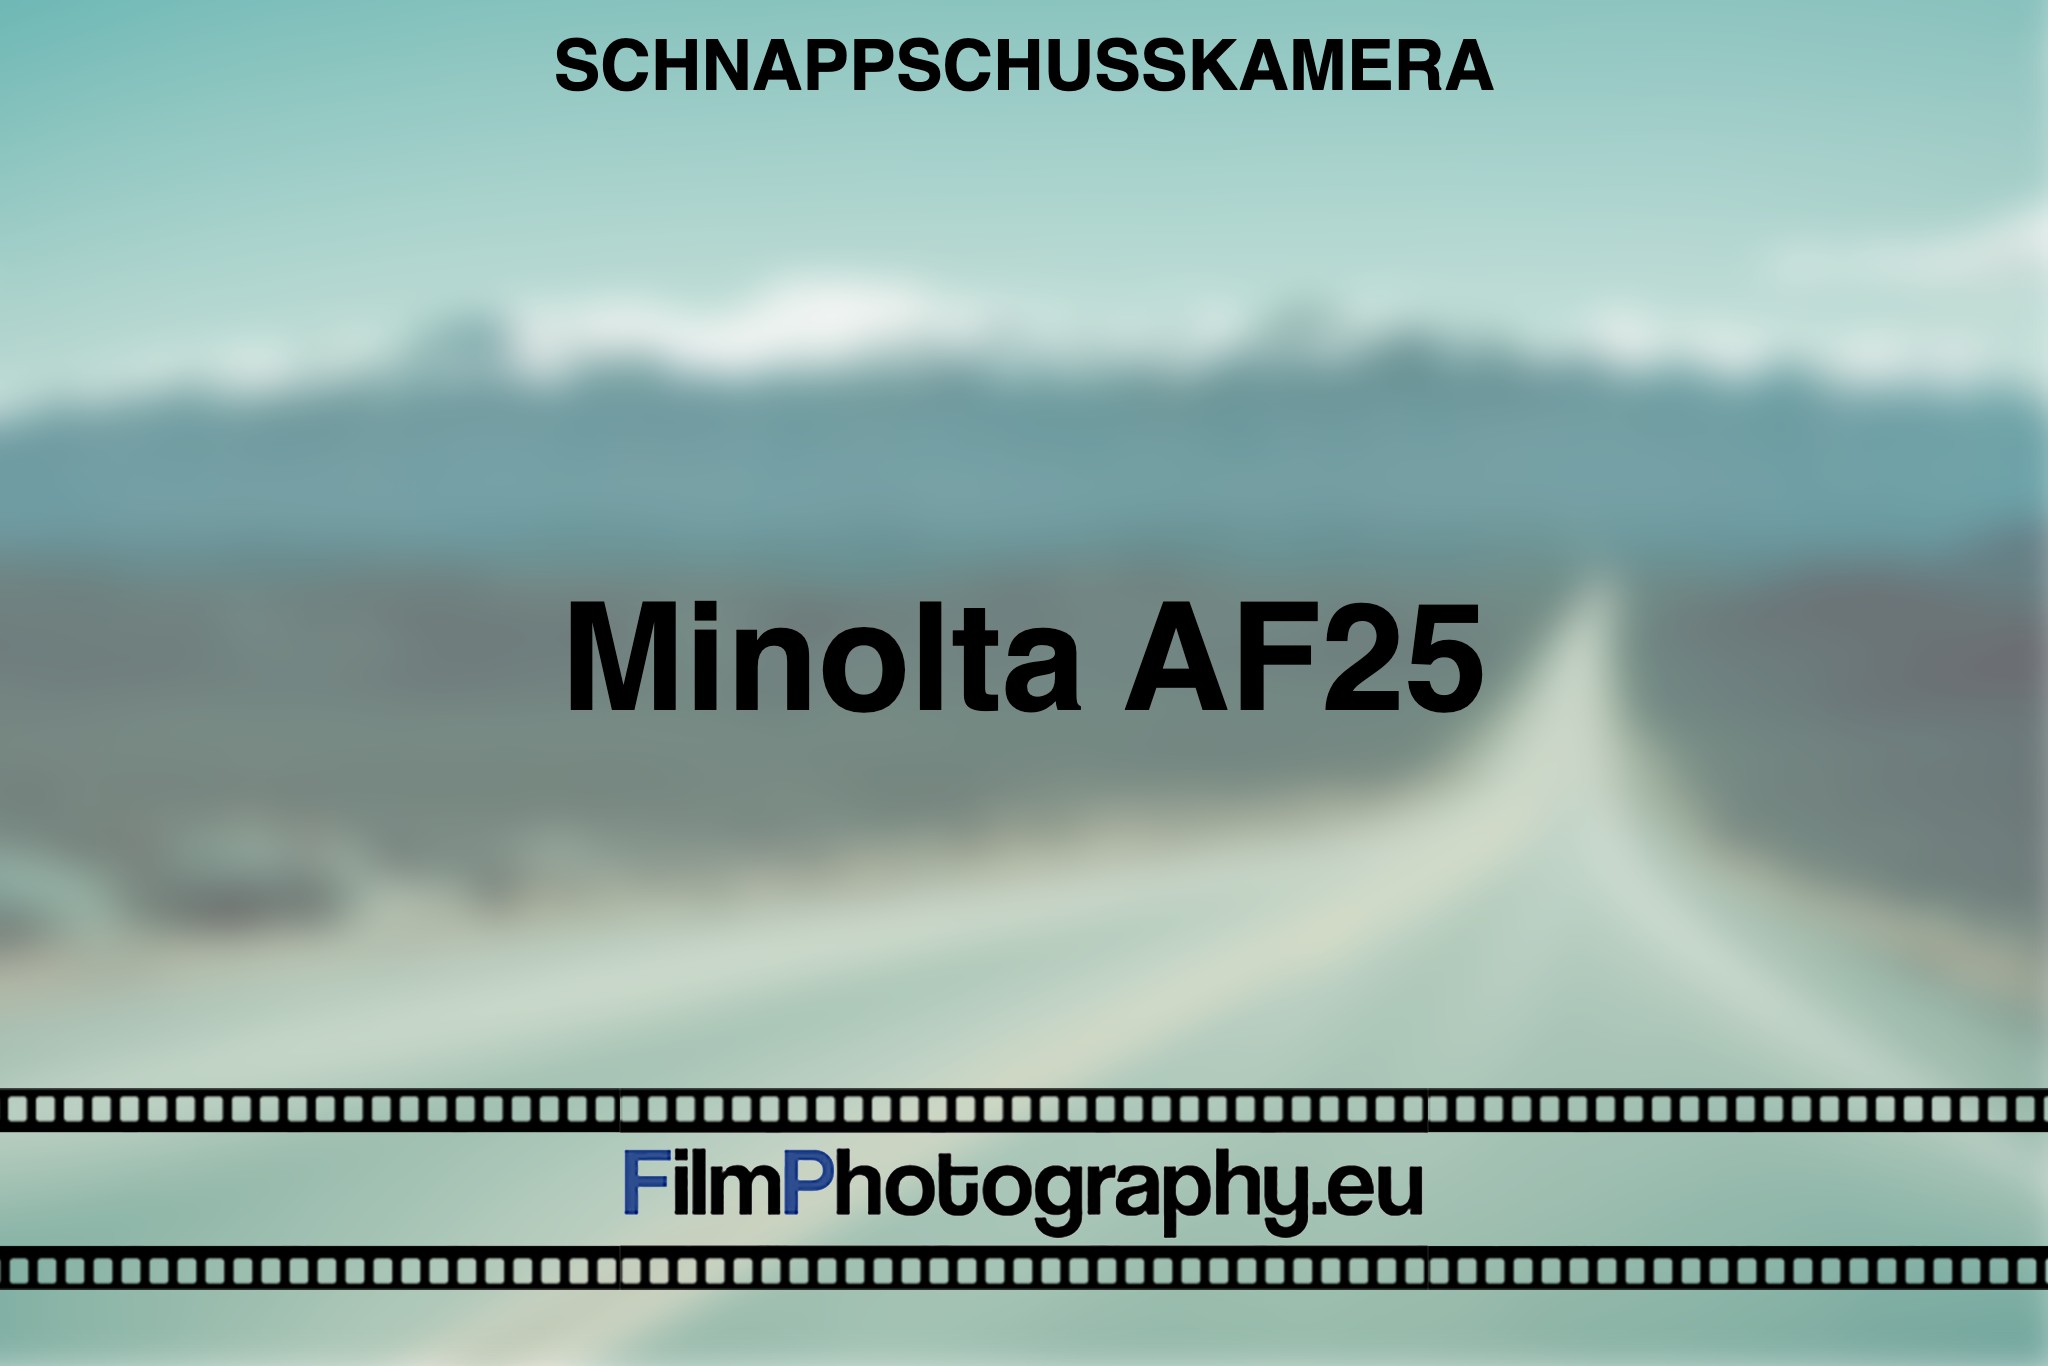 minolta-af25-schnappschusskamera-bnv